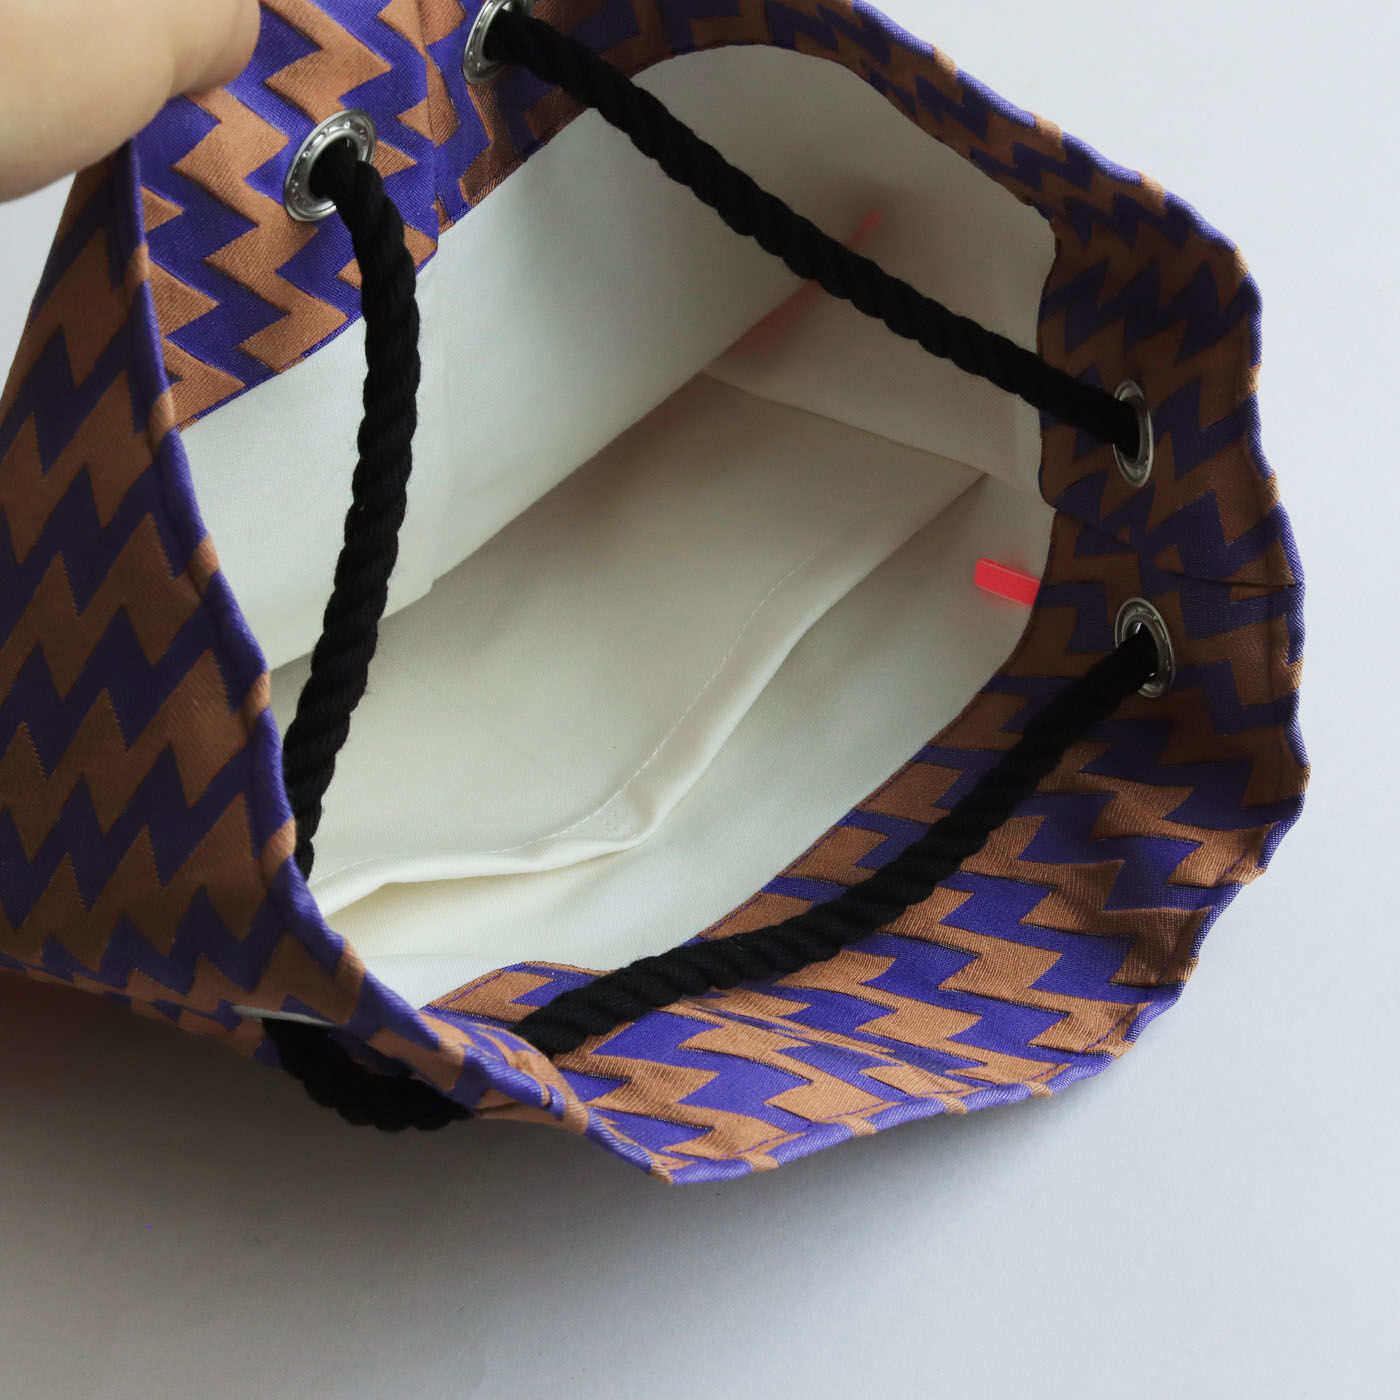 ＆Stories|テキスタイルデザイナーと作った 播州織のダズリングバッグ〈サンセット〉|内ポケットは2つ。